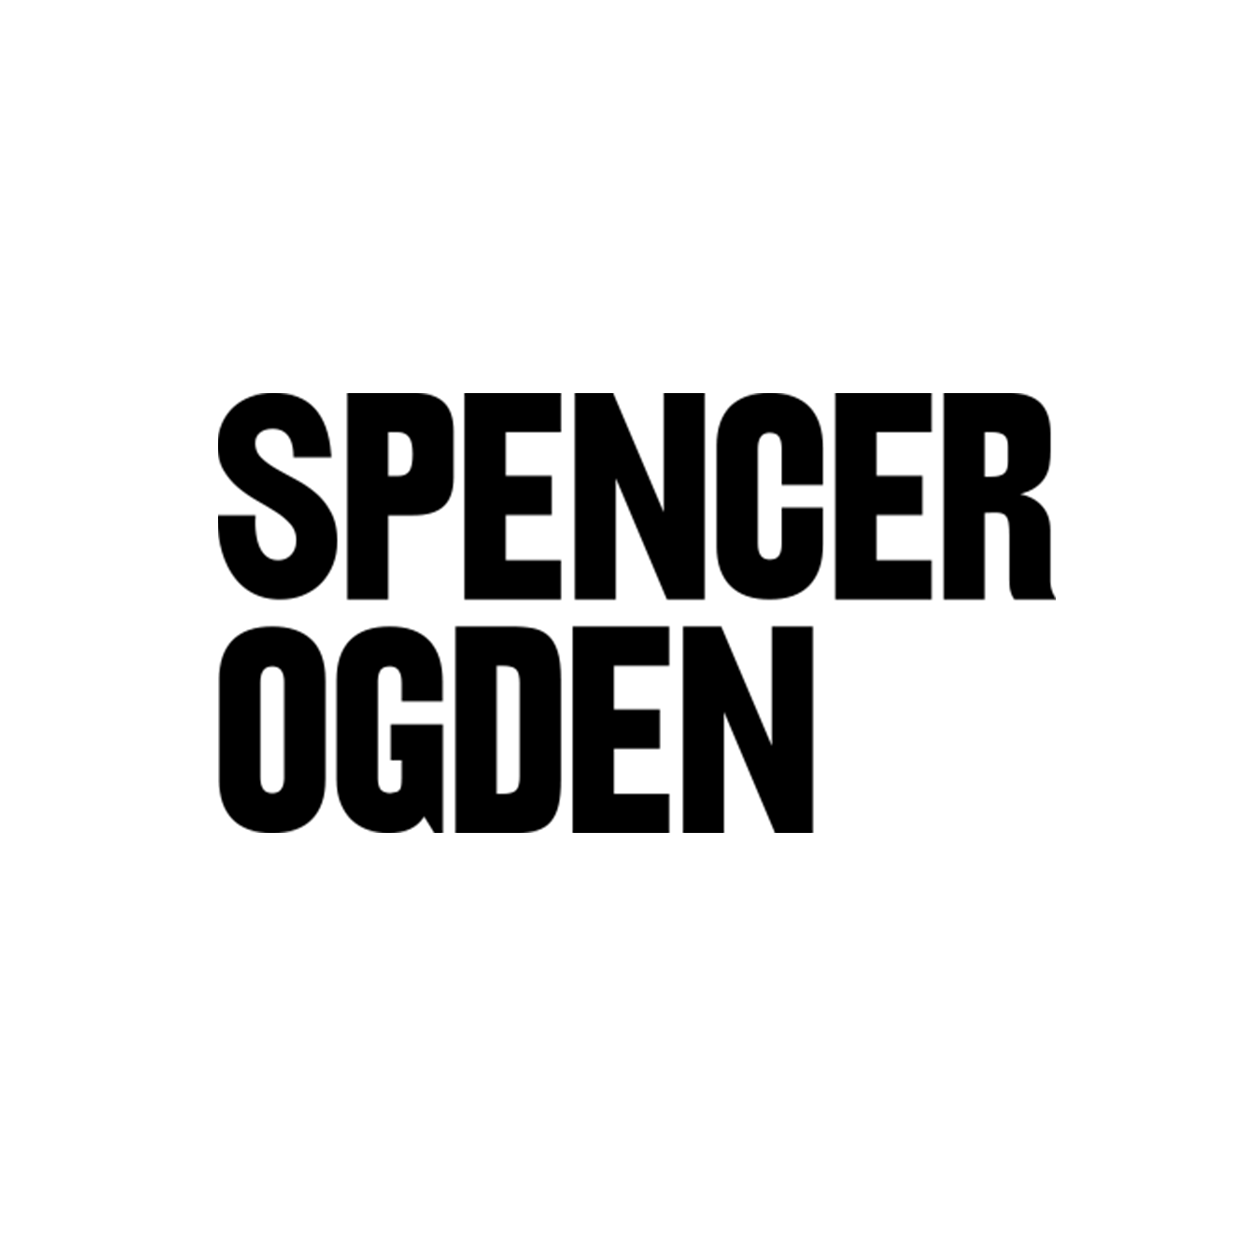 Spencer_Ogden_1250x1250